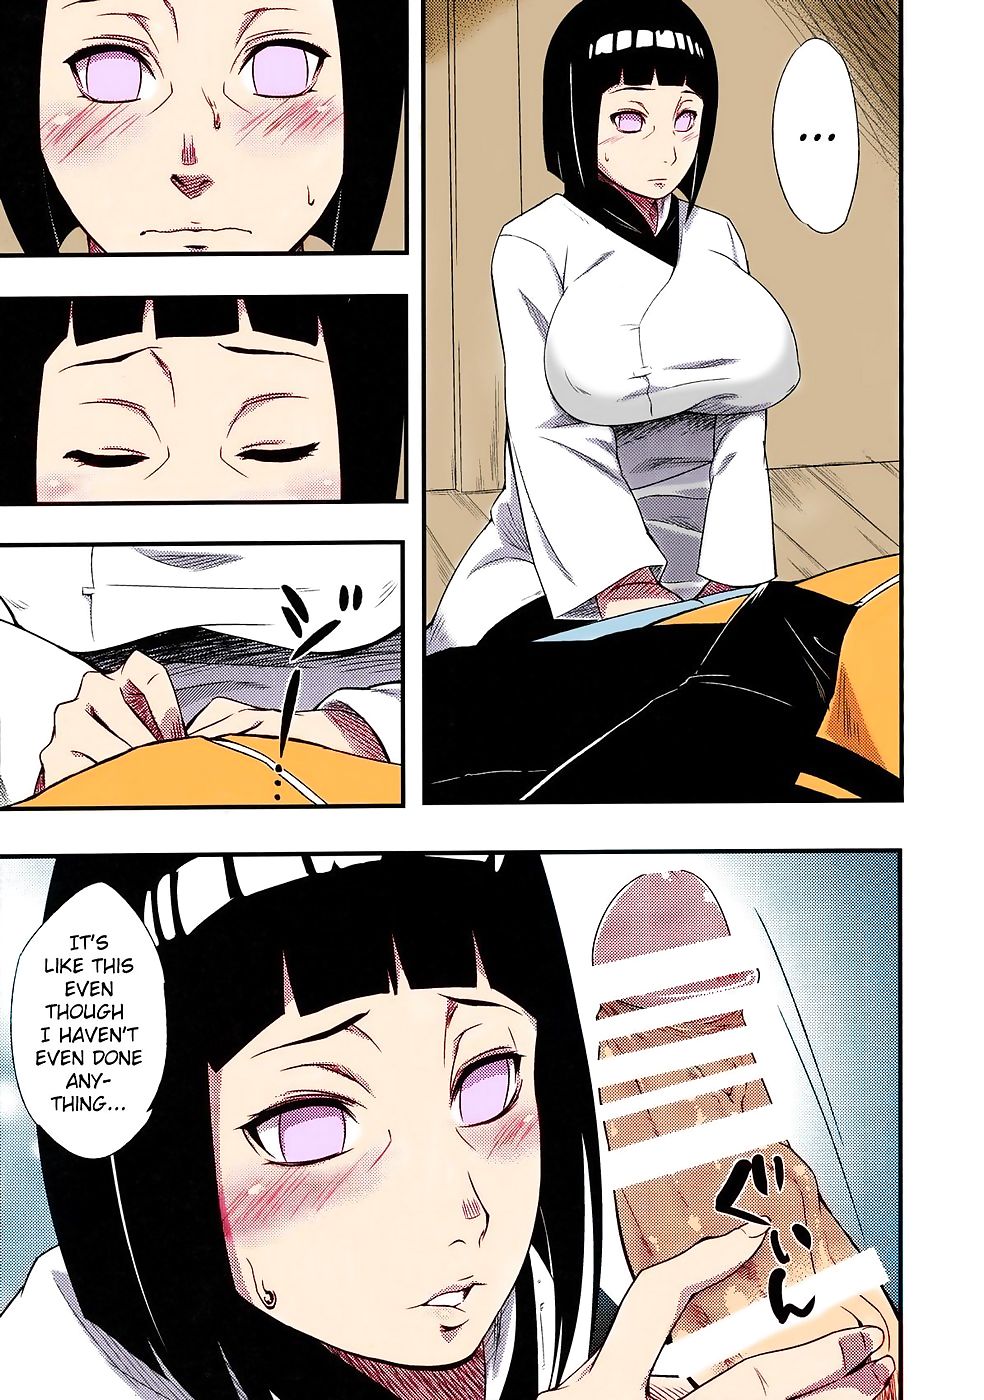 Naruto Hinata And Sakura Hentai Comic And Naruto Hinata Sakura